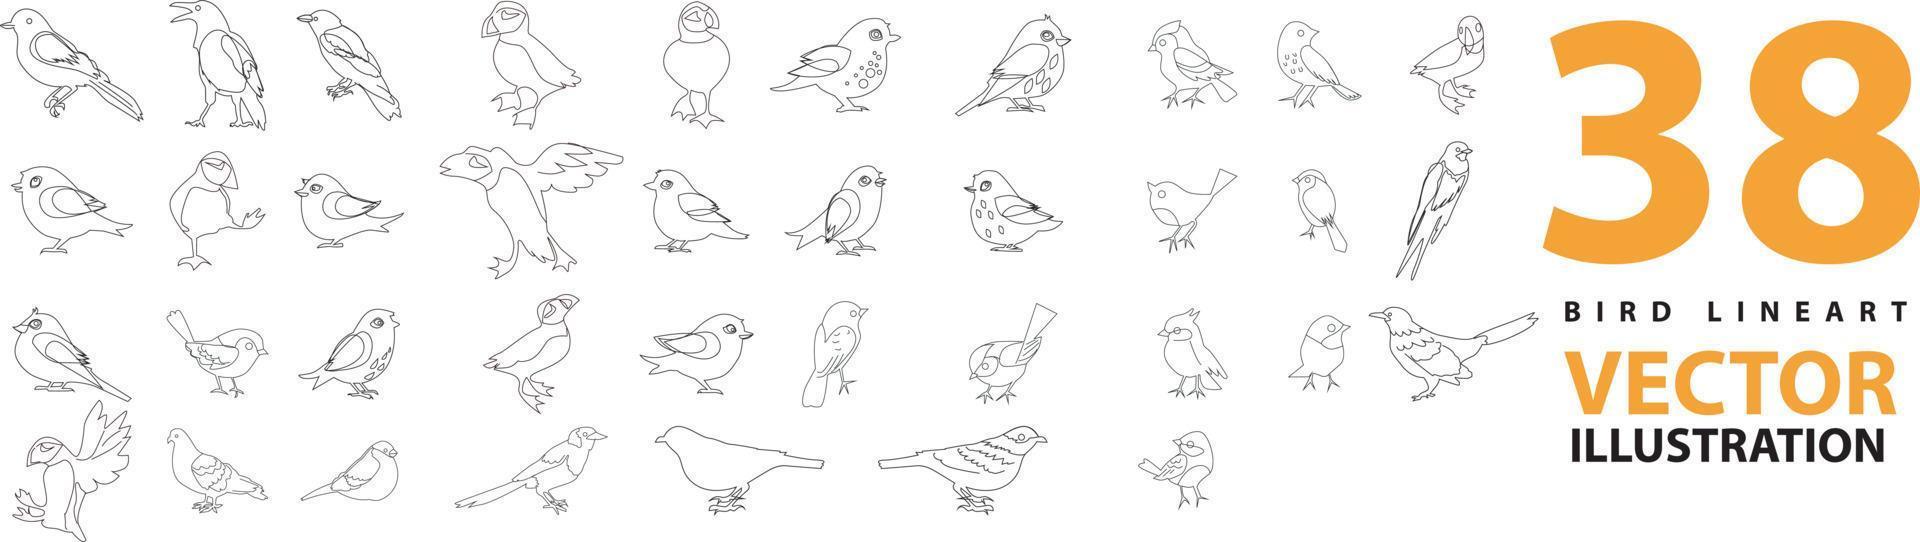 conjunto vectorial de silueta de pájaro en estilo plano varios estilos y formas se posan en una rama, vector de pájaro plano aislado en fondo blanco